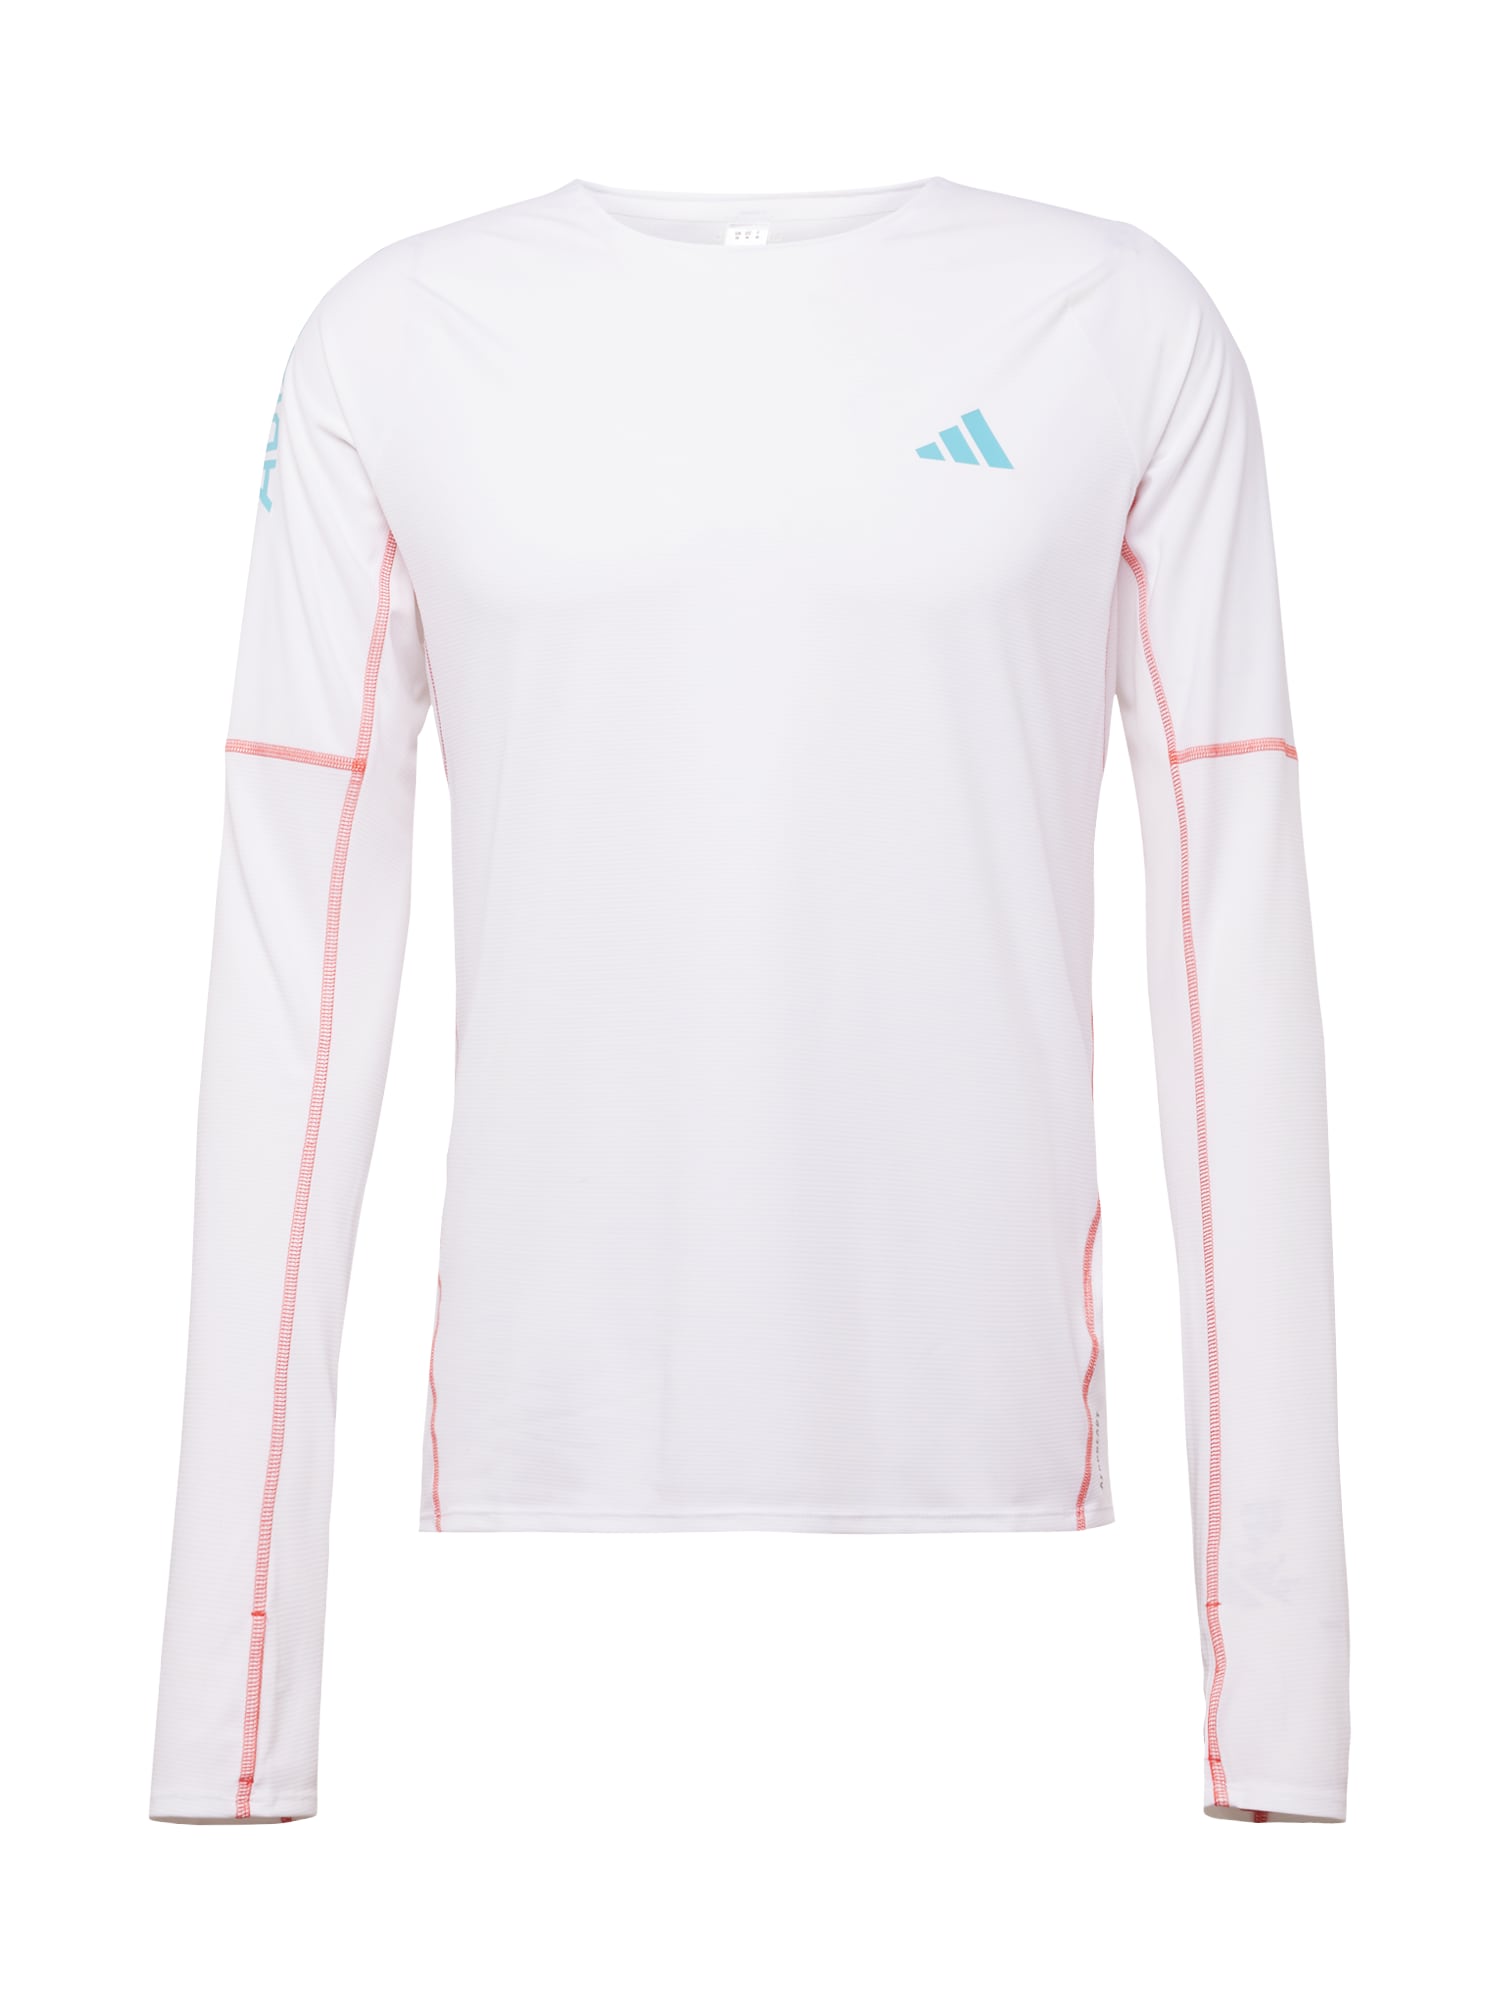 ADIDAS PERFORMANCE Sportiniai marškinėliai 'Adizero' mėlyna / oranžinė / balta